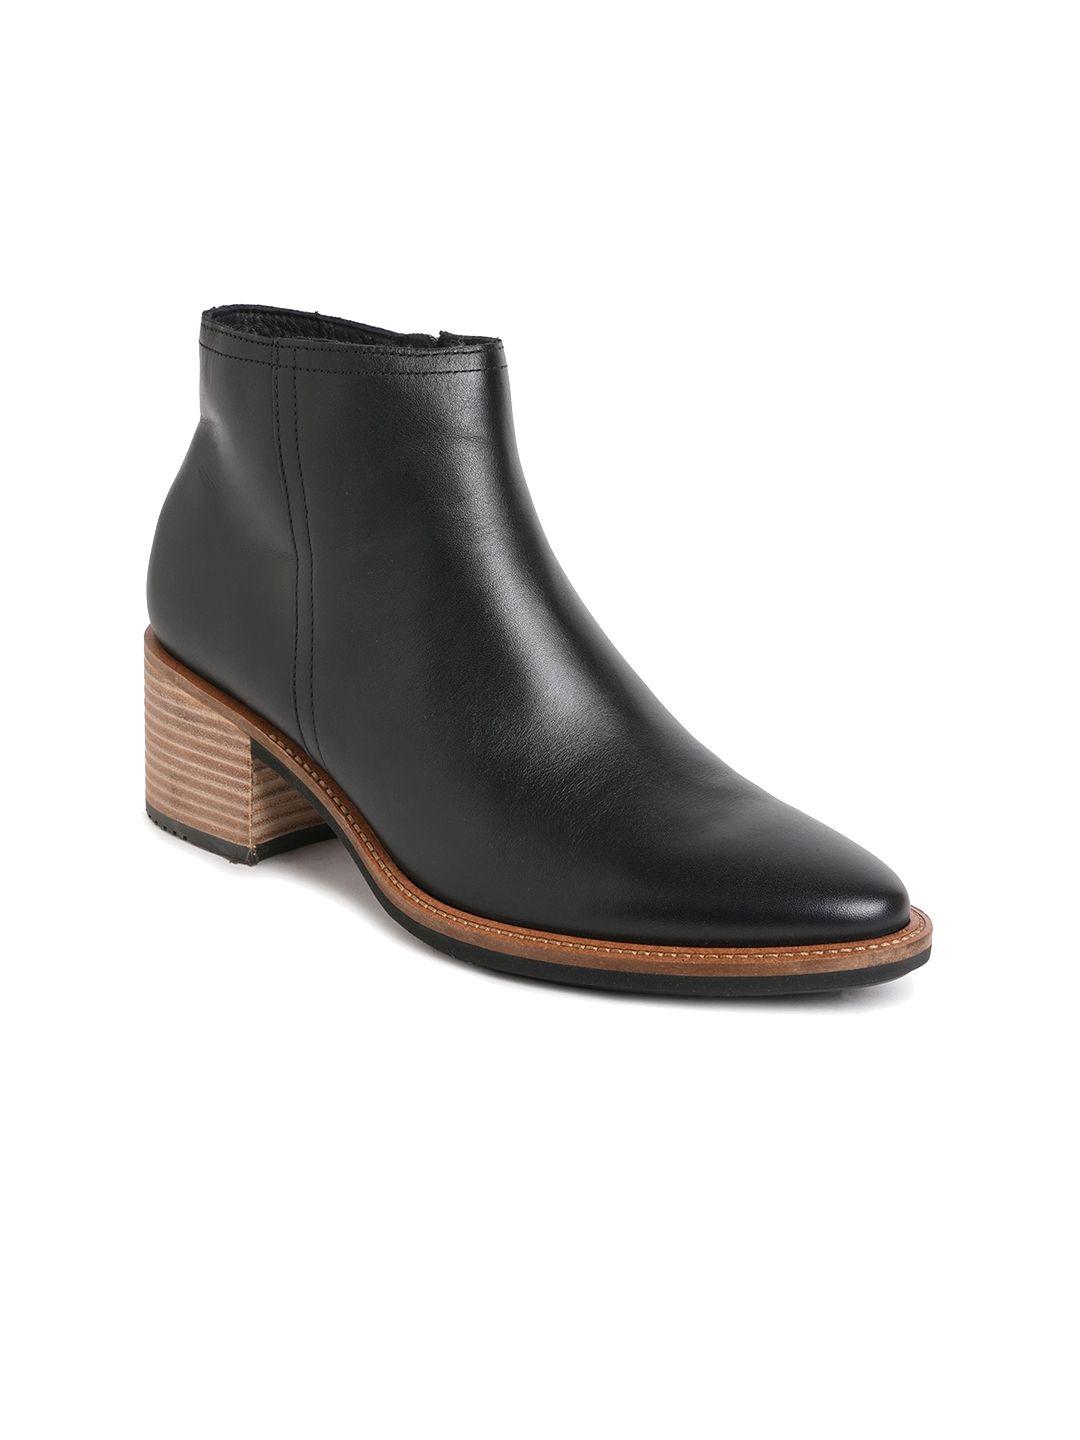 ecco women shape 35 sartorelle mid top block heel leather regular boots